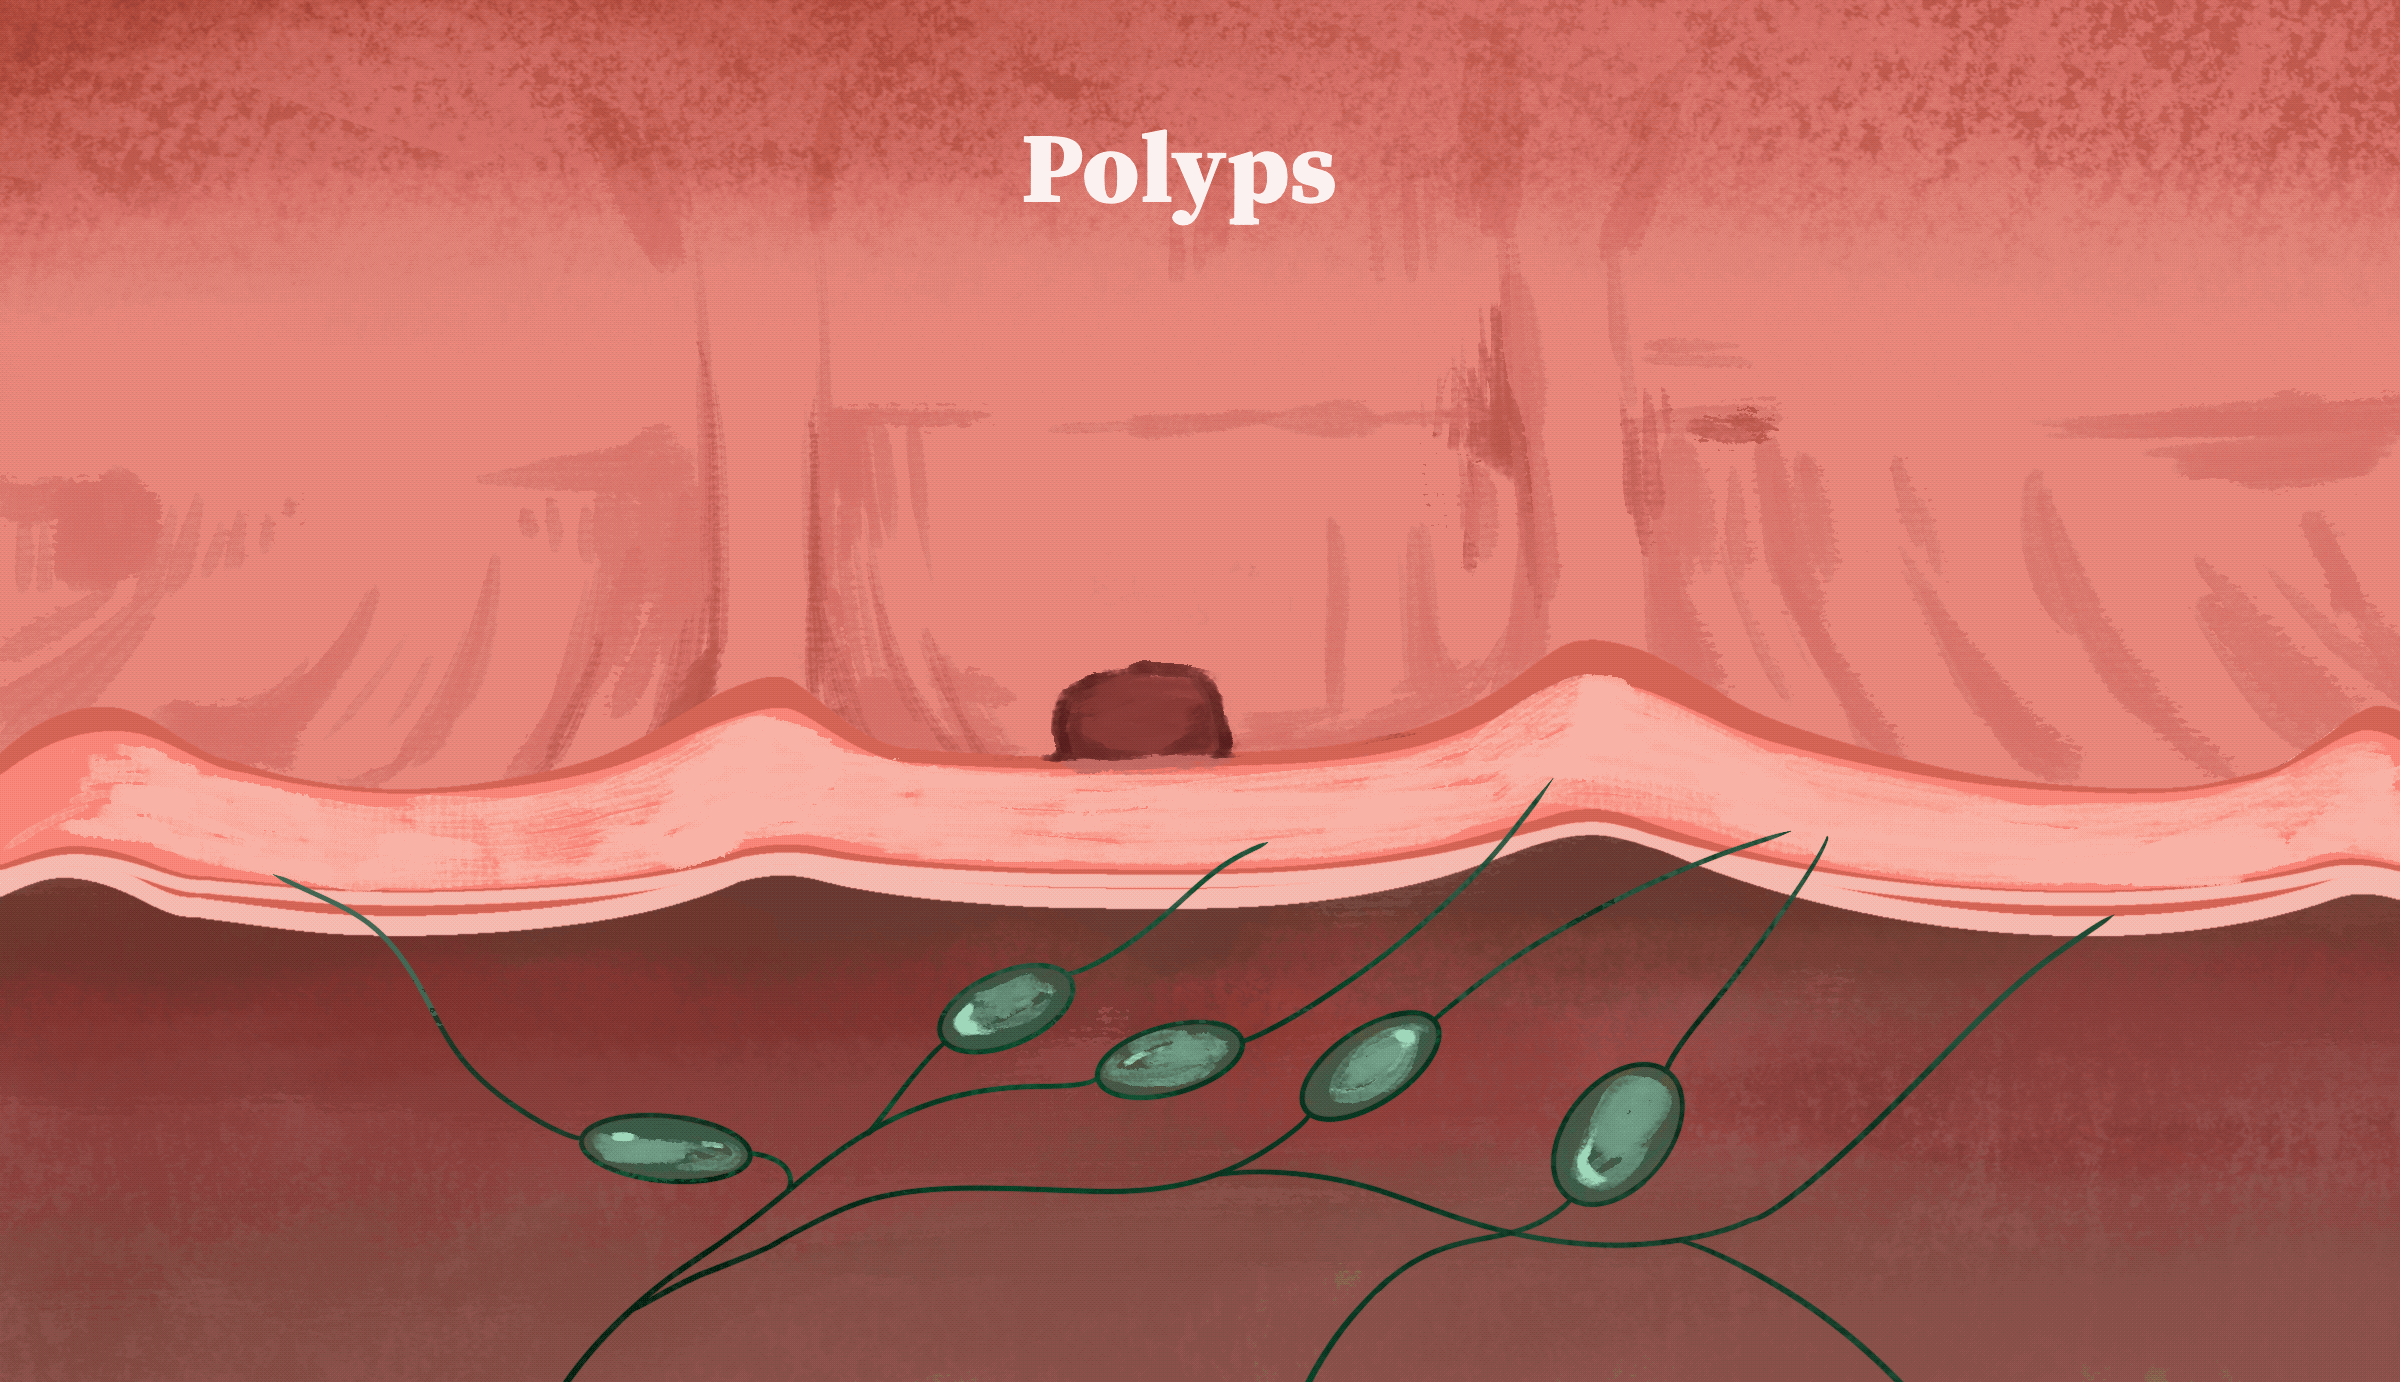 Ung thư đại trực tràng phát triển từ polyps như thế nào. (Ảnh minh họa bởi The Epoch Times)